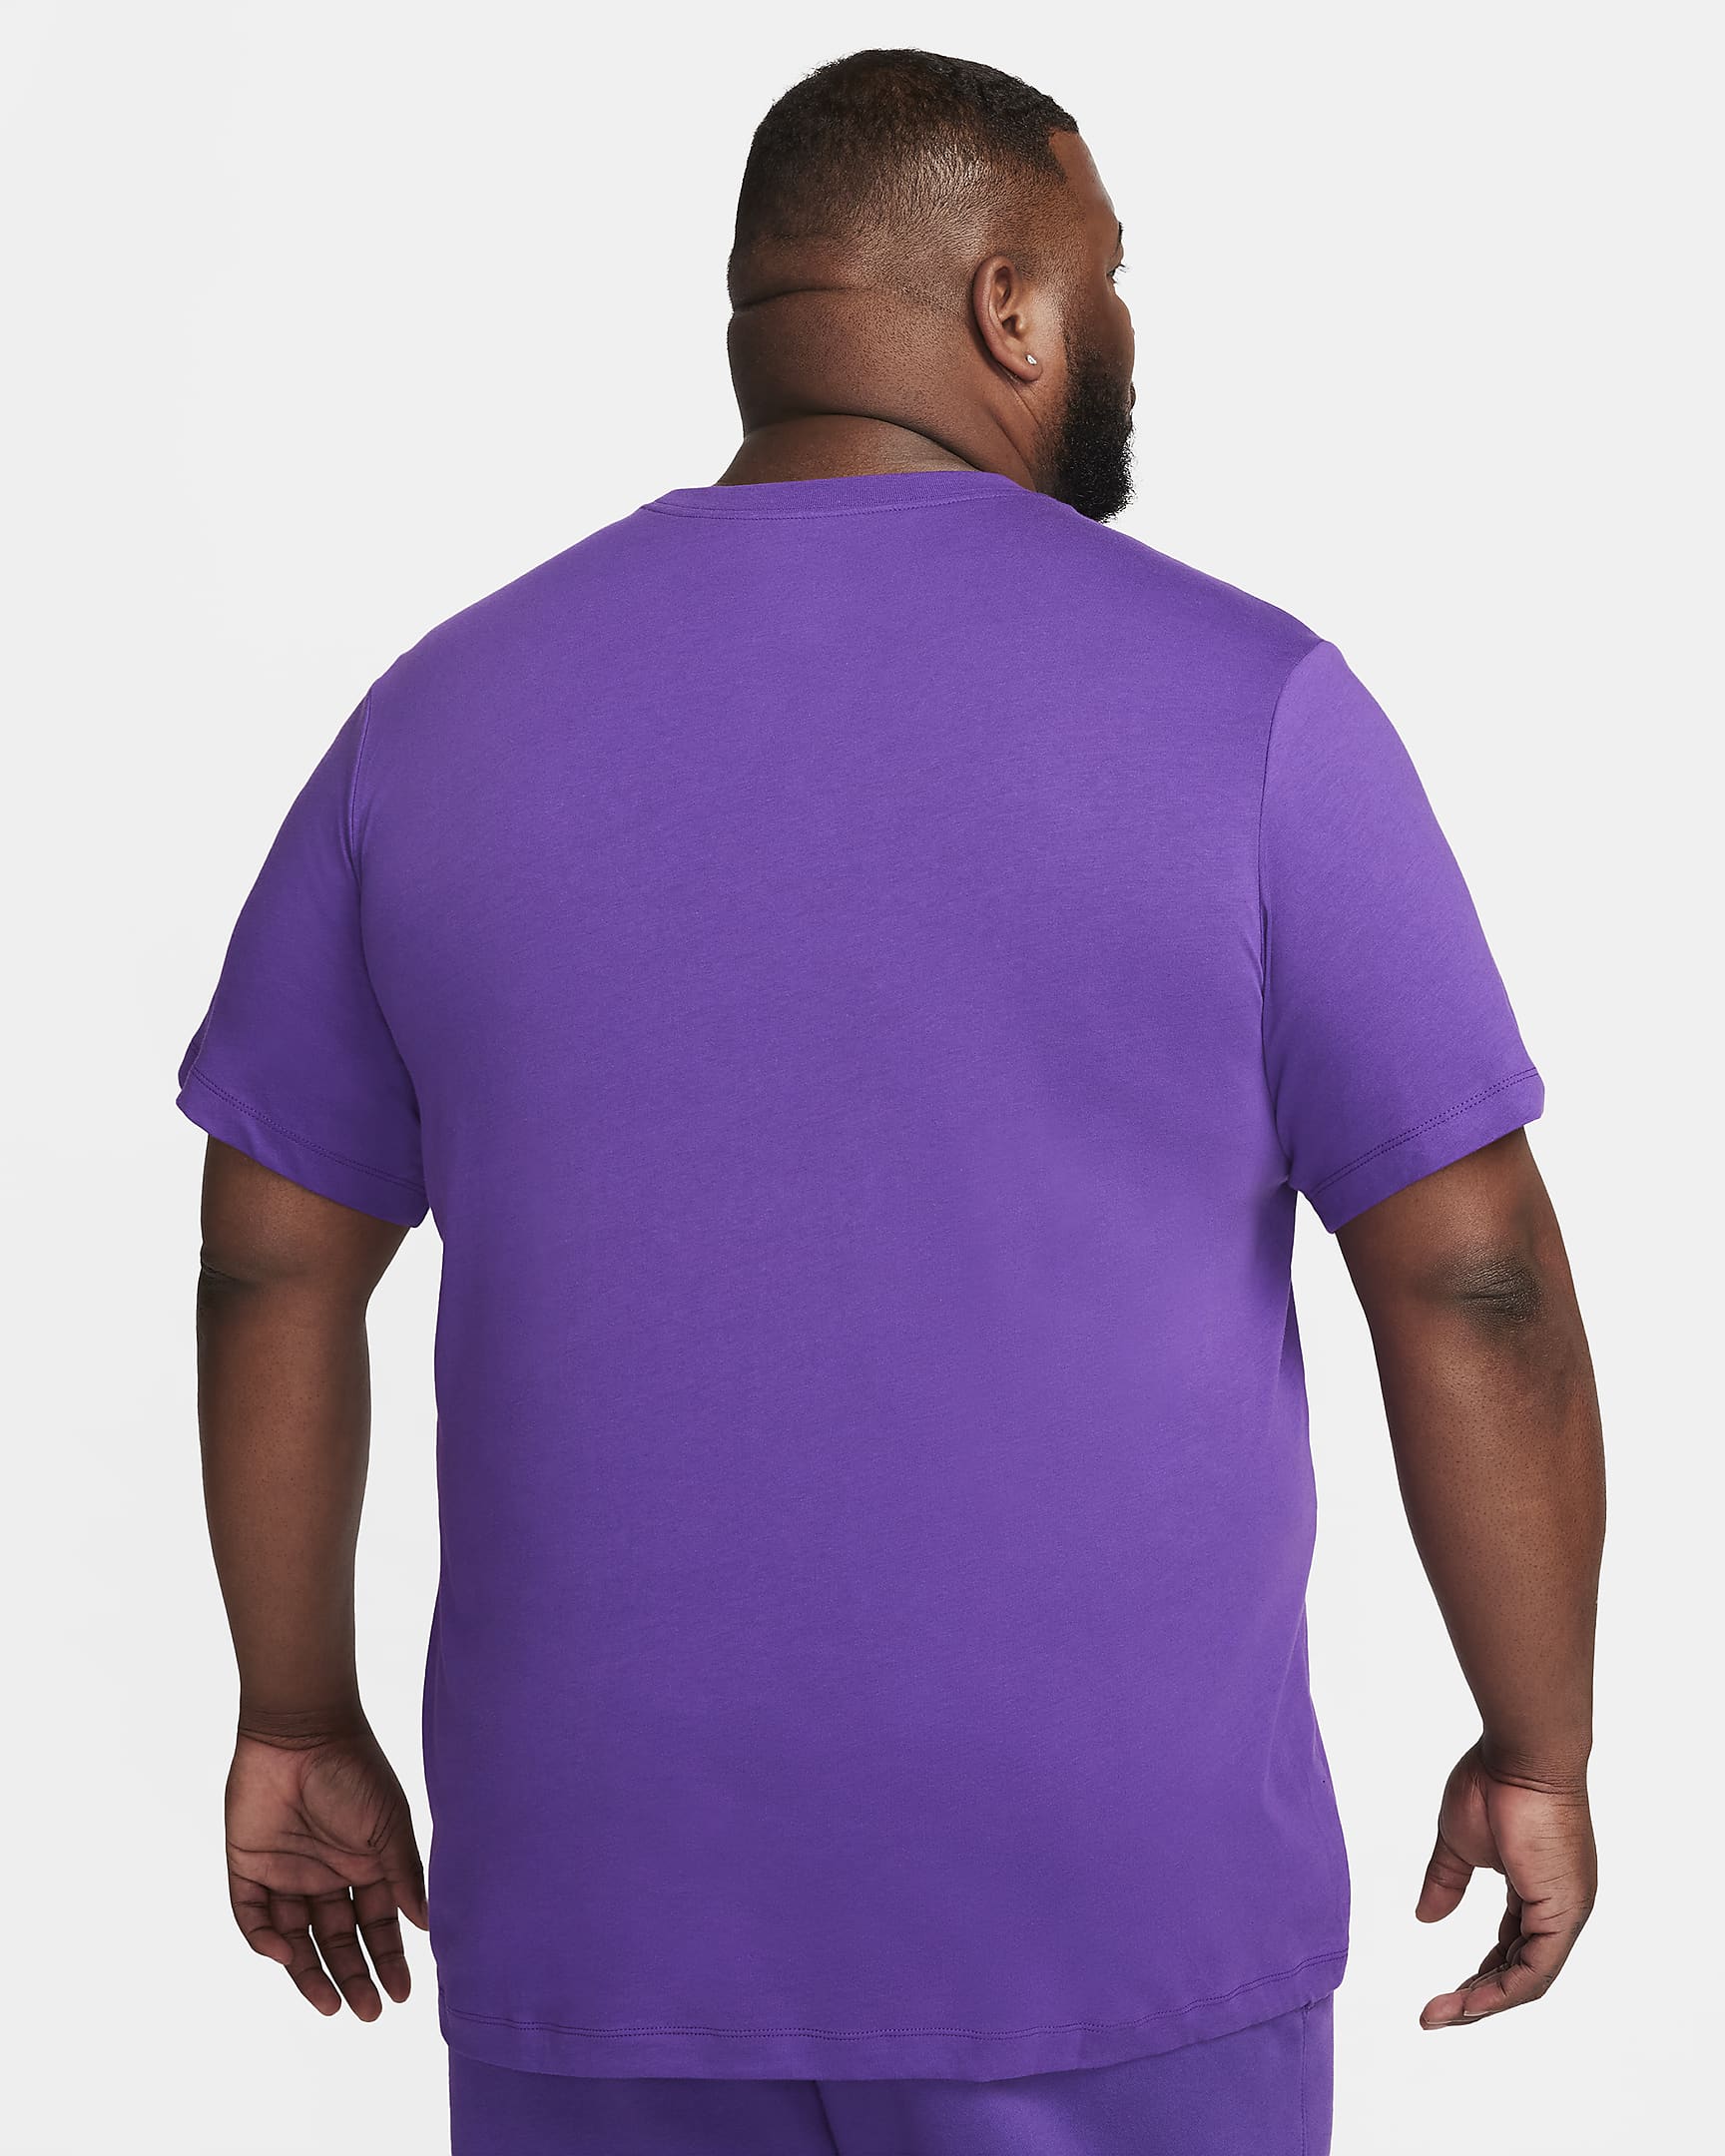 Nike Sportswear Men's T-Shirt - Purple Cosmos